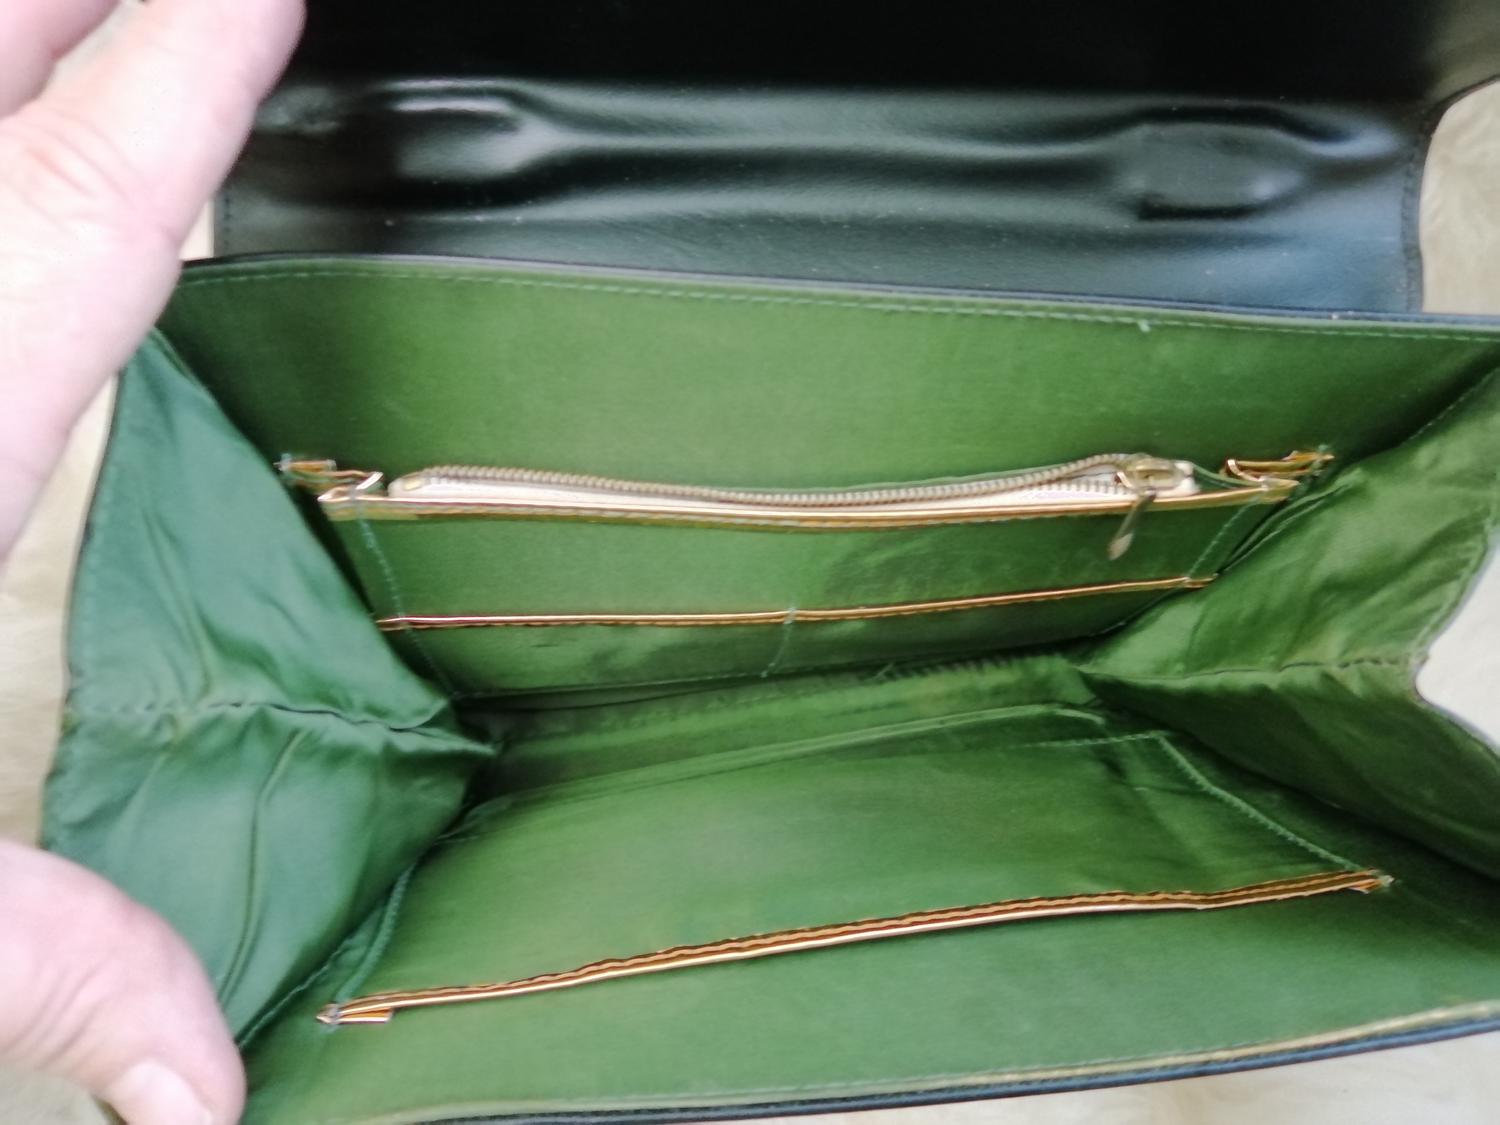 Vintage svart handväska kort handtag silverf spänne grönt foder flera fack